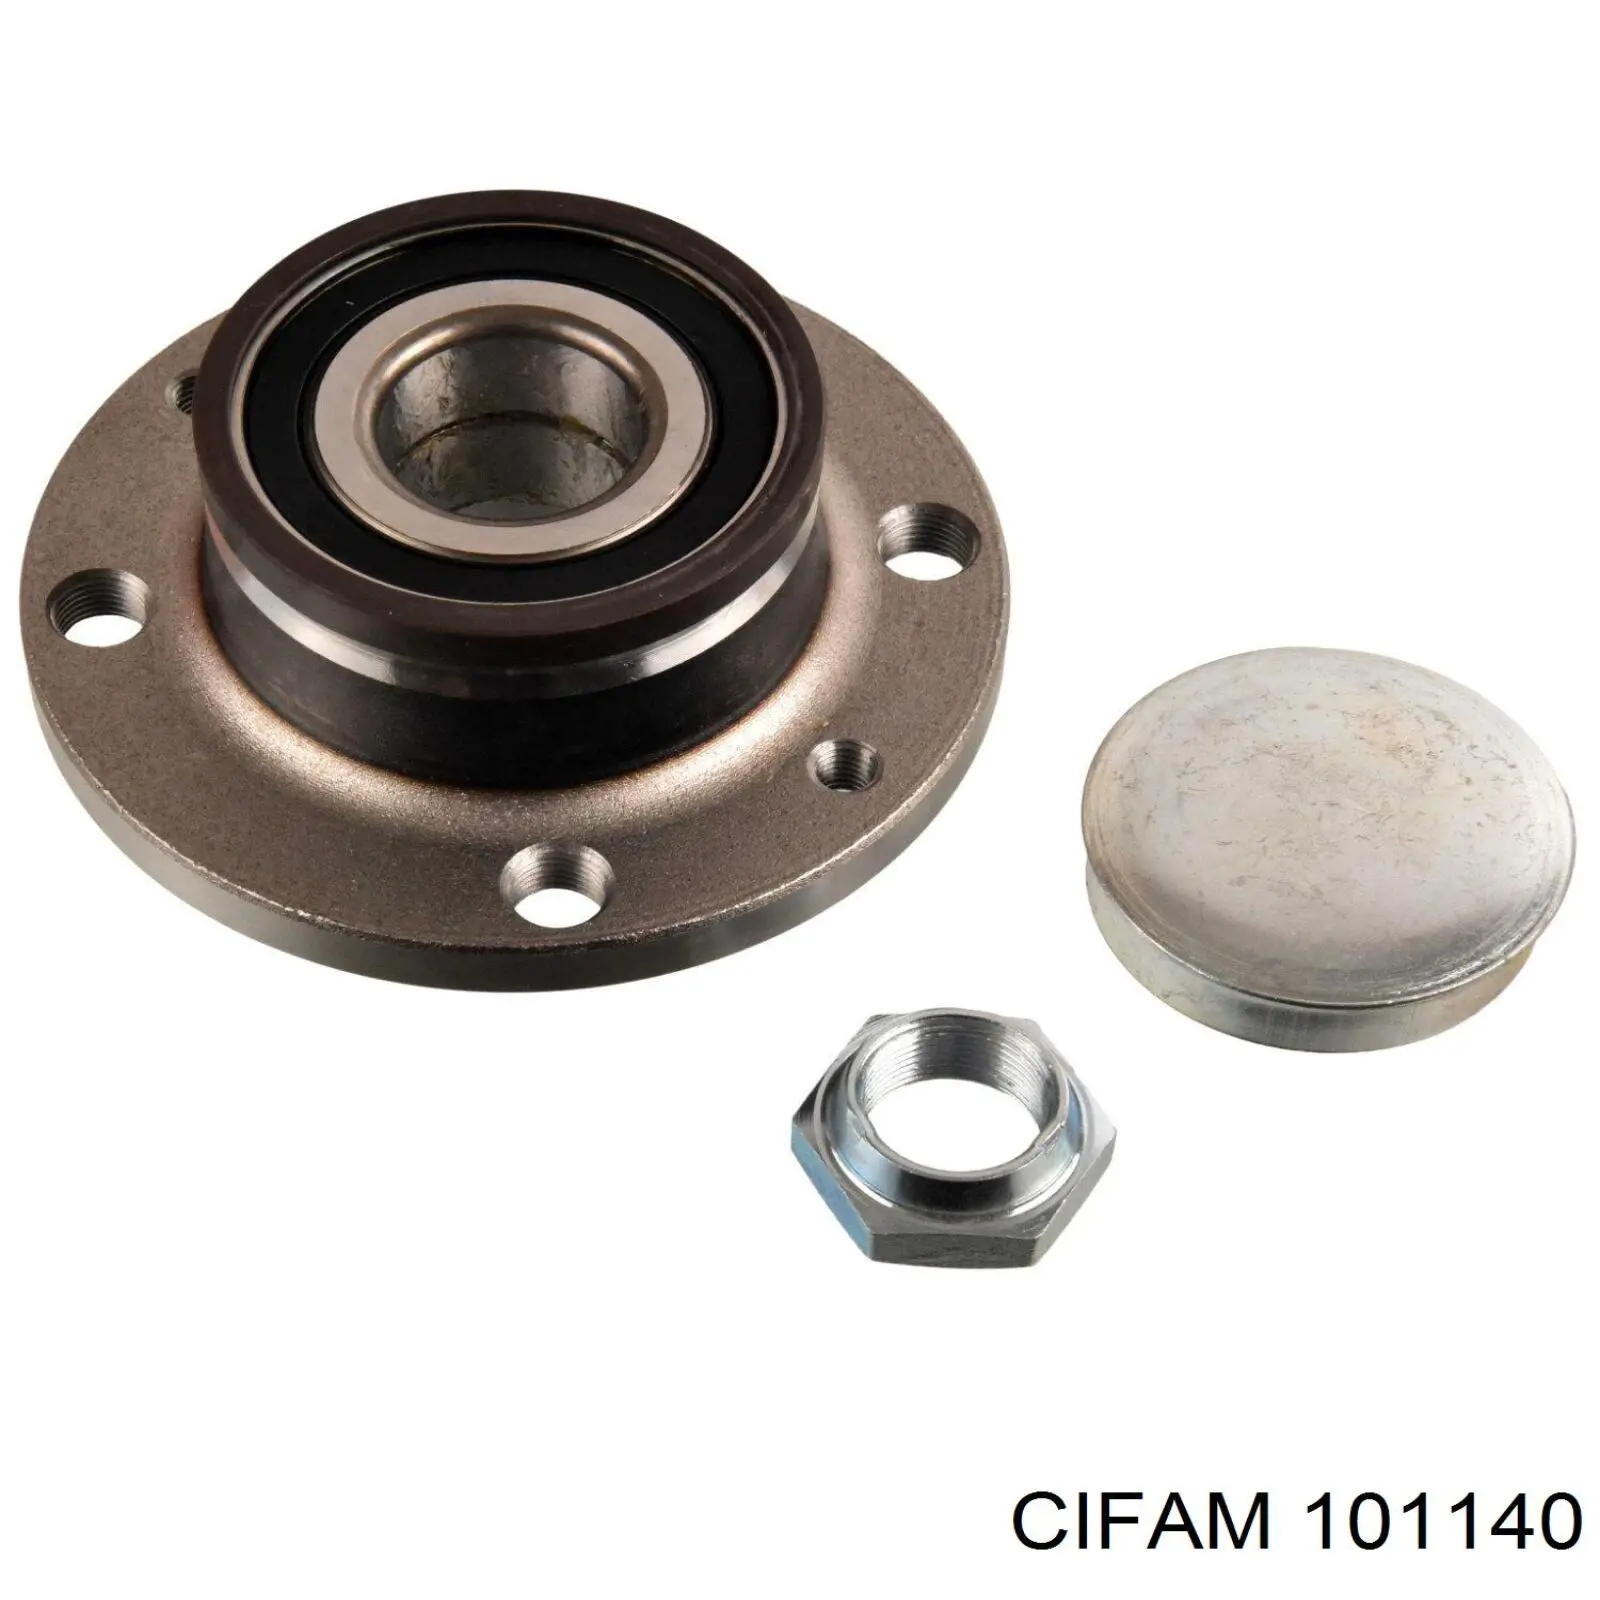 101140 Cifam цилиндр тормозной колесный рабочий задний